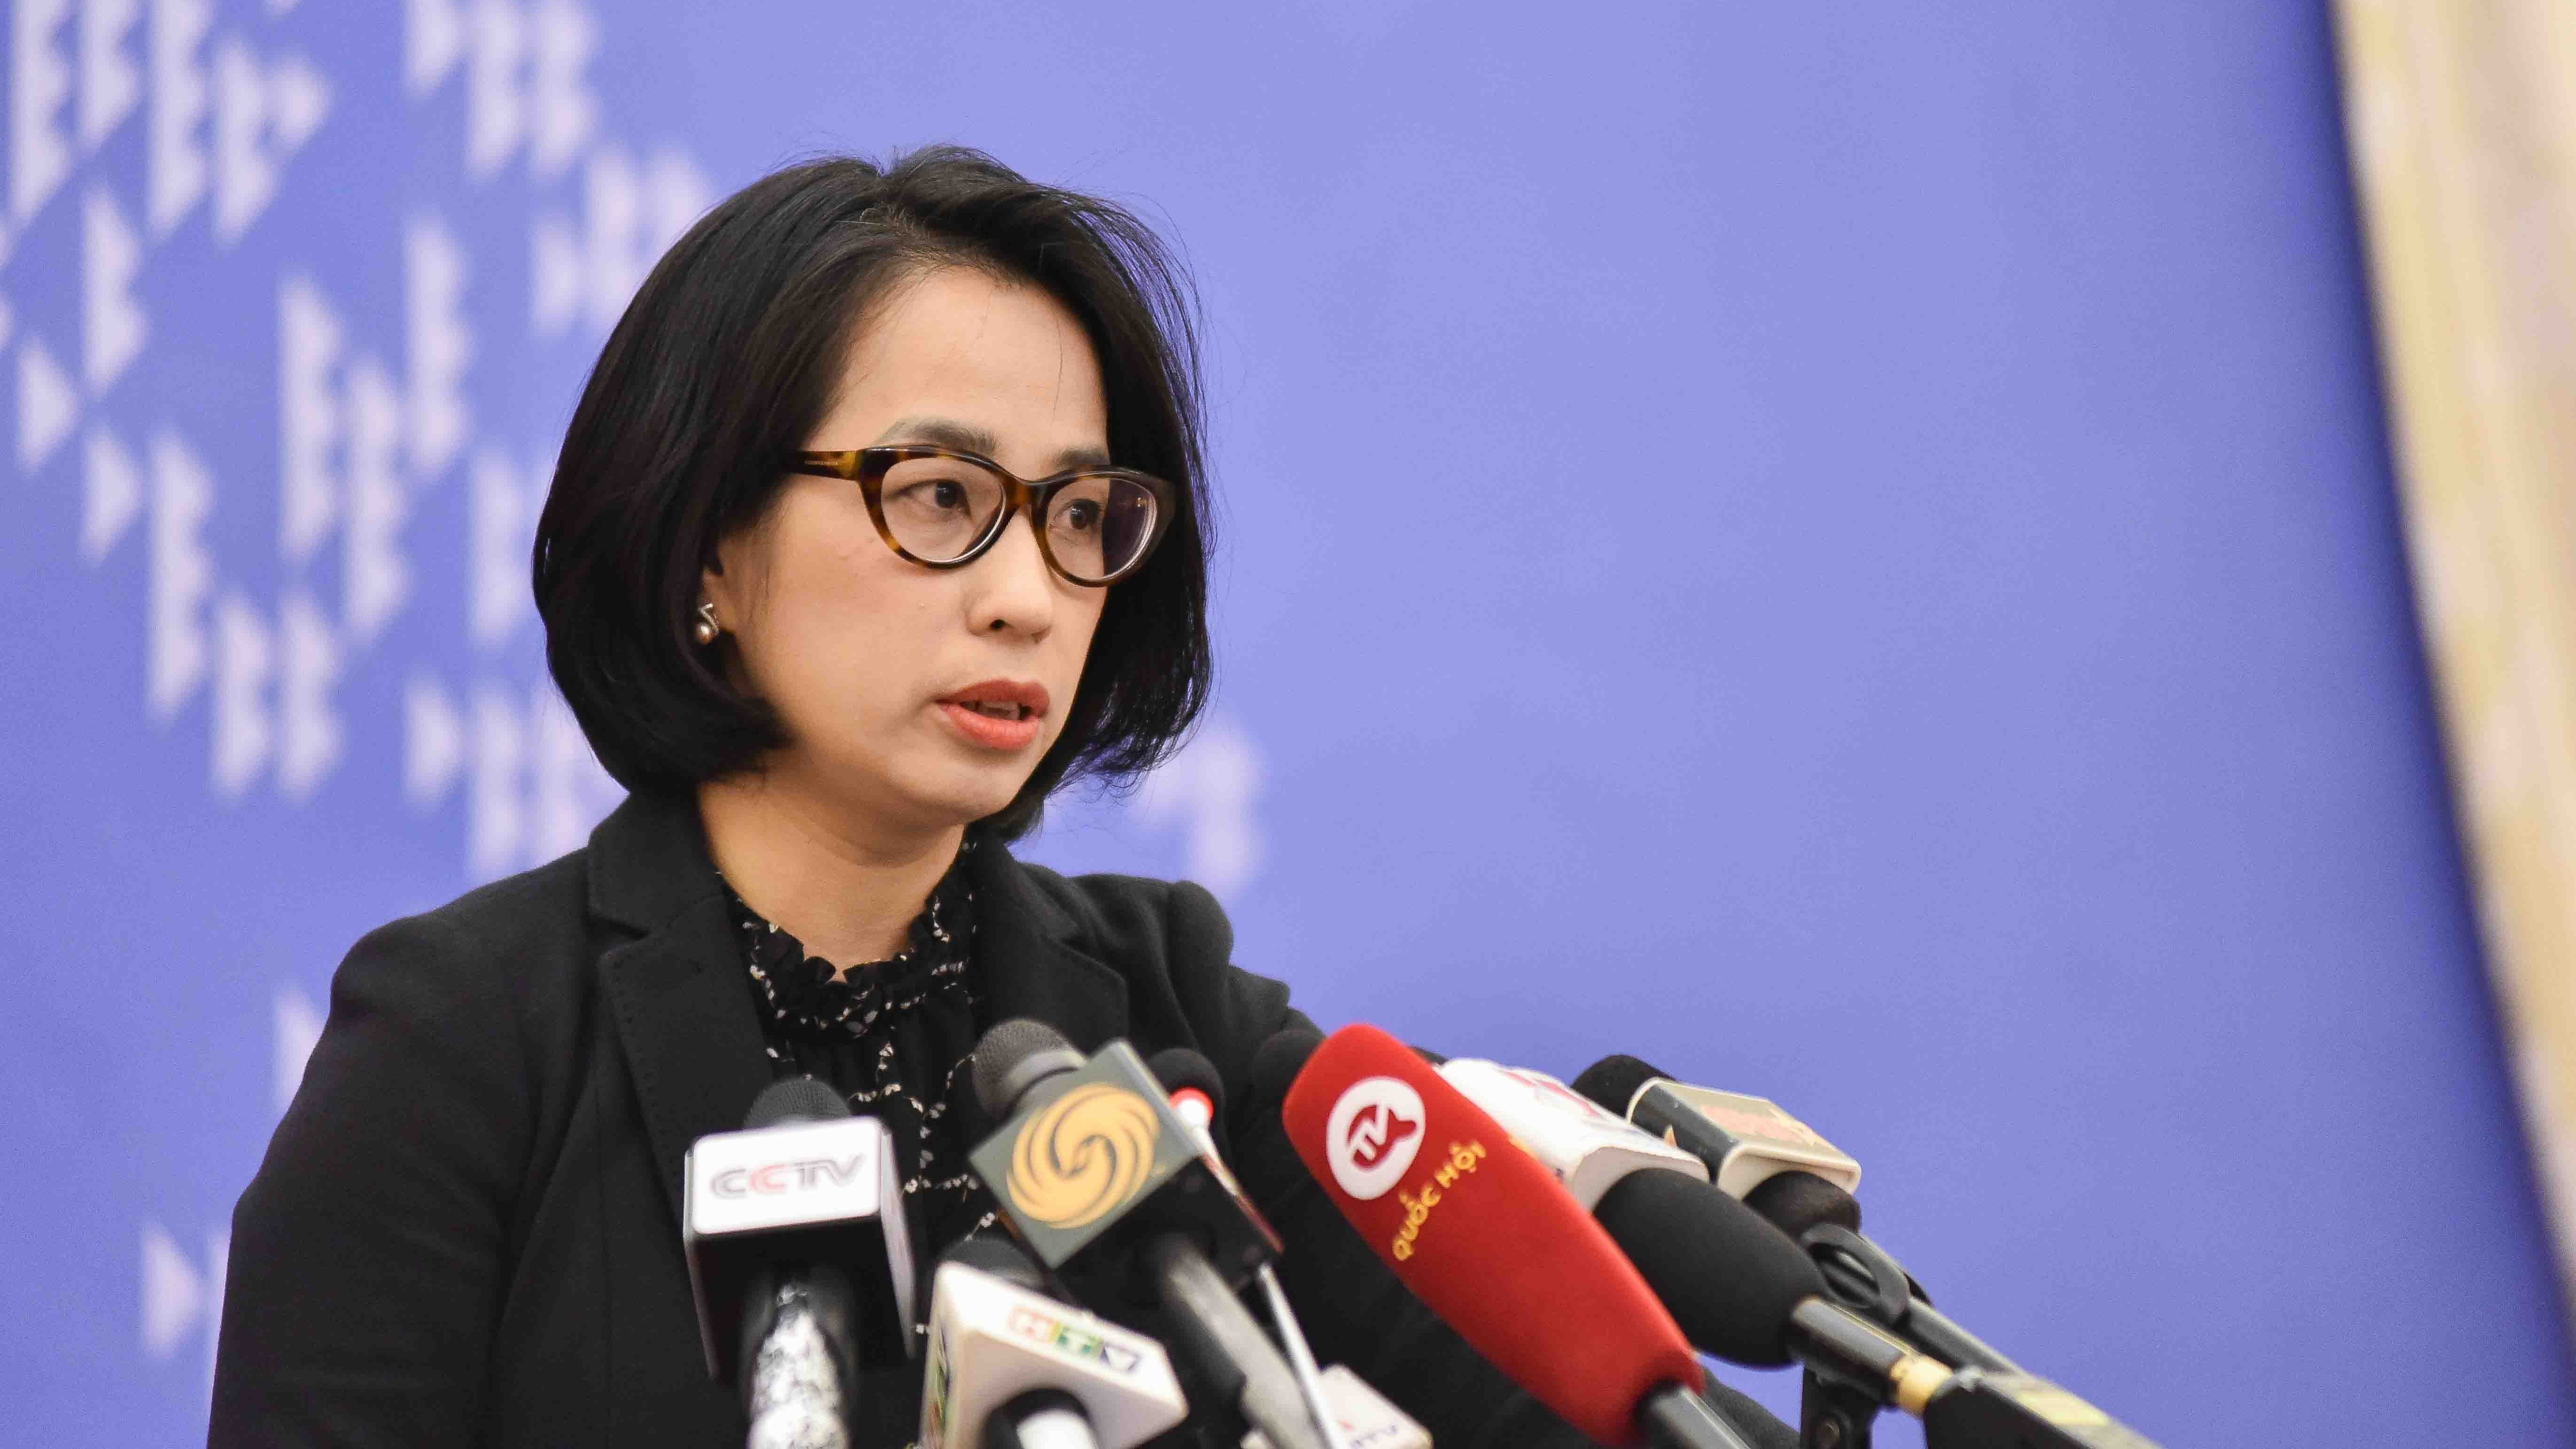 Việt Nam bác bỏ và lên án những nội dung bịa đặt, sai sự thật về tình hình nhân quyền tại Việt Nam